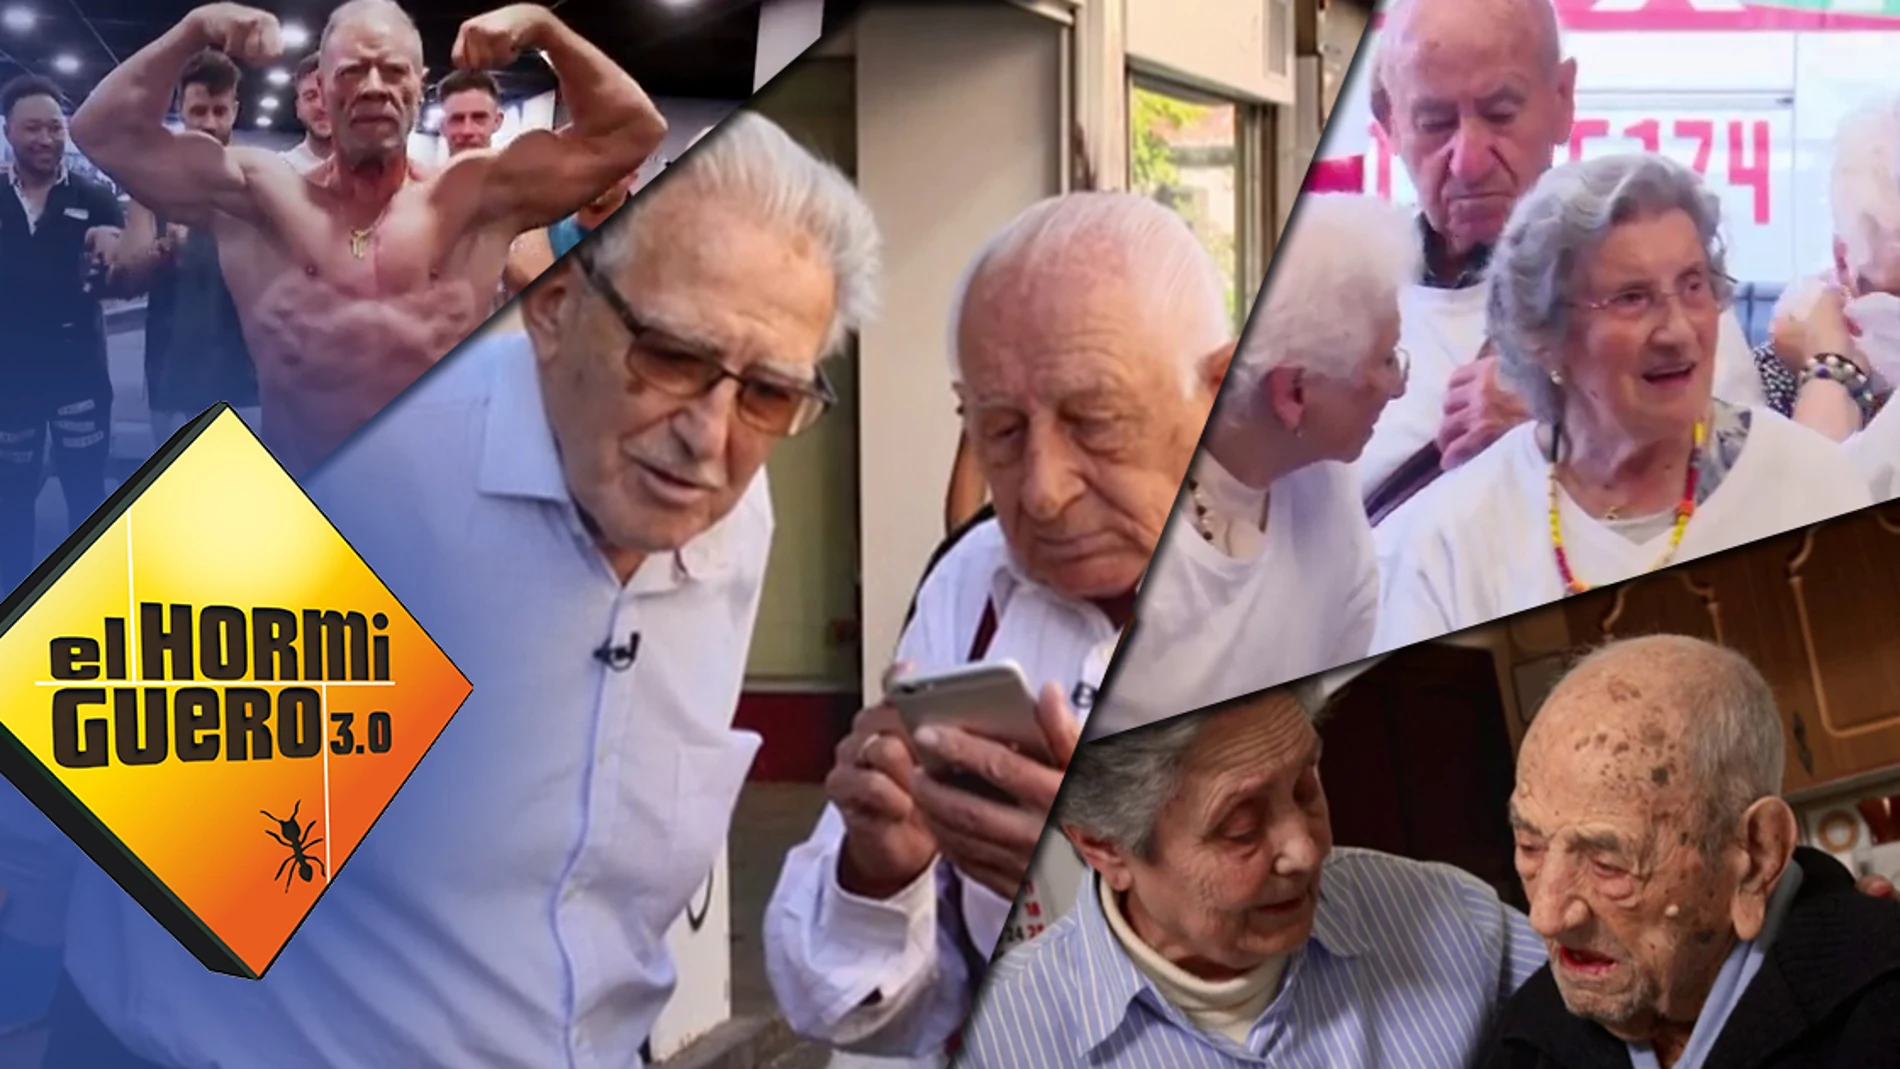 ‘El Hormiguero 3.0’ rinde homenaje a nuestros mayores, ¡feliz día del abuelo!